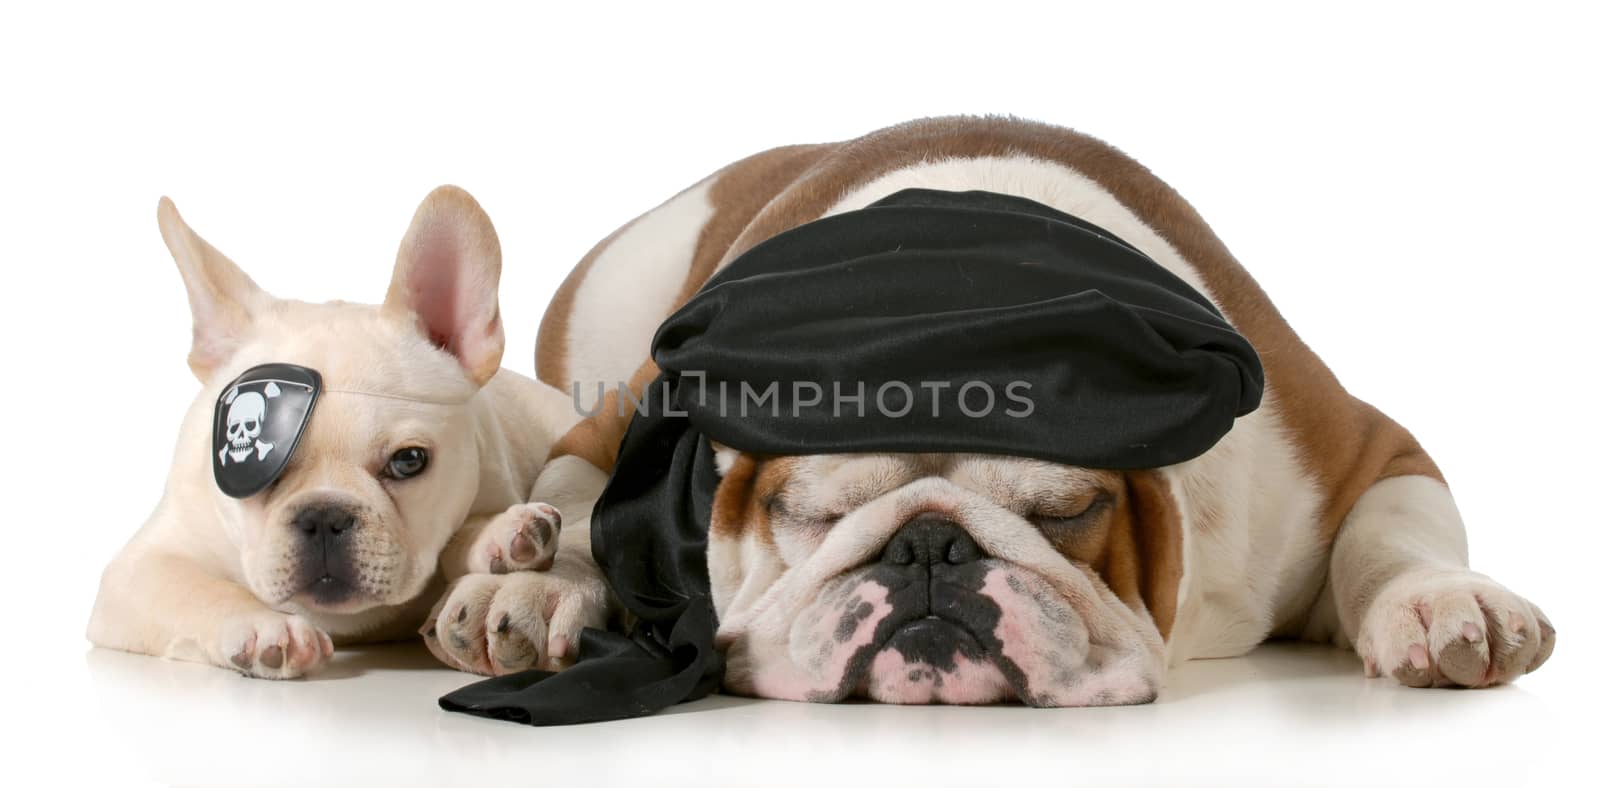 dog pirates - french and english bulldog dressed up like pirates isolated on white background